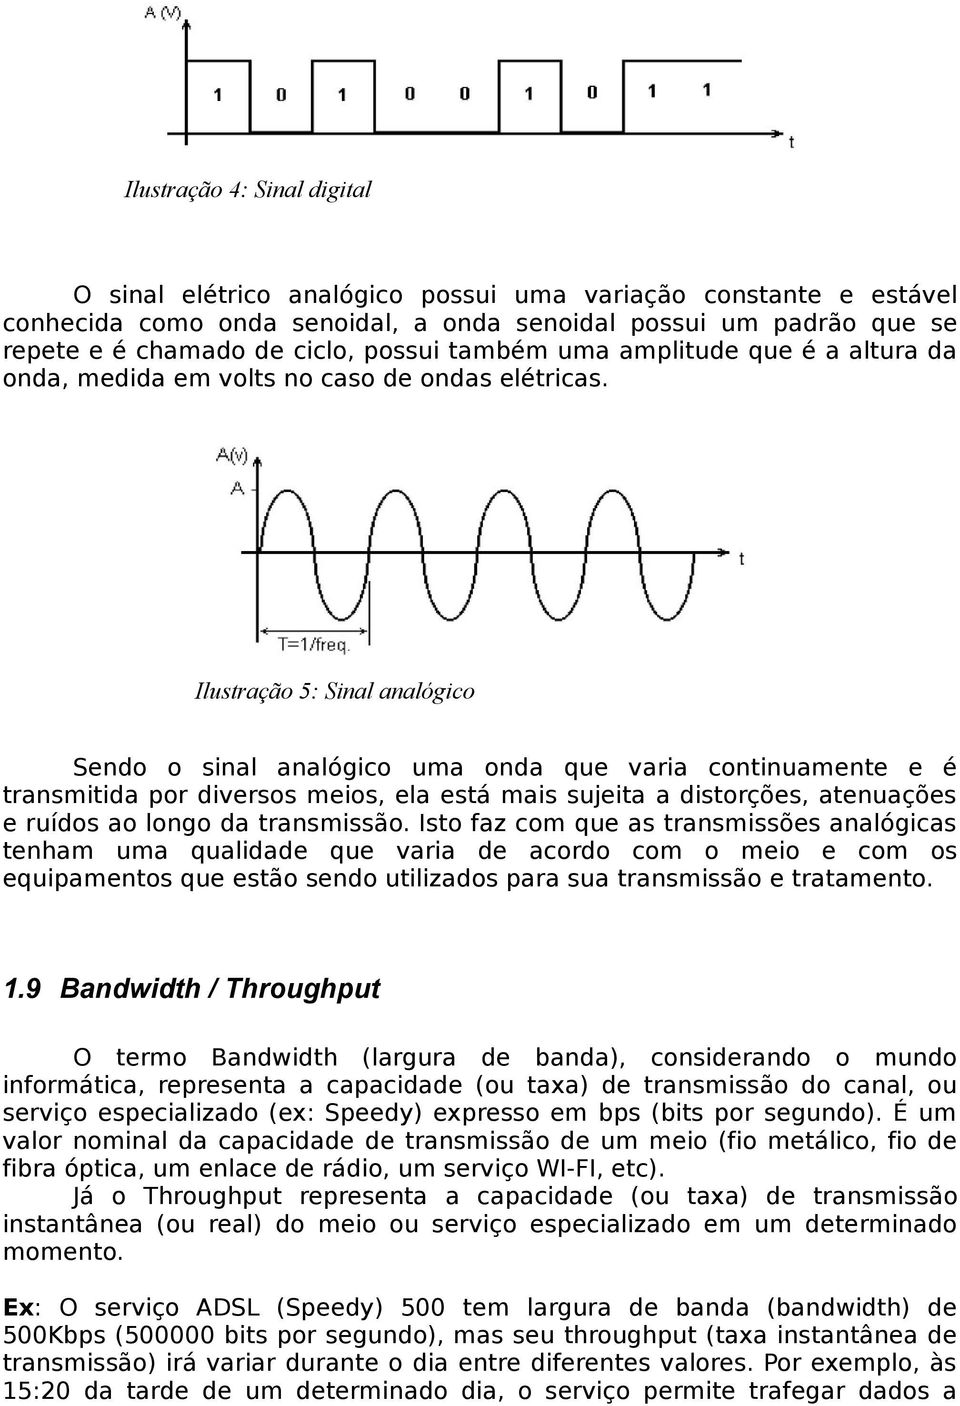 Ilustração 5: Sinal analógico Sendo o sinal analógico uma onda que varia continuamente e é transmitida por diversos meios, ela está mais sujeita a distorções, atenuações e ruídos ao longo da